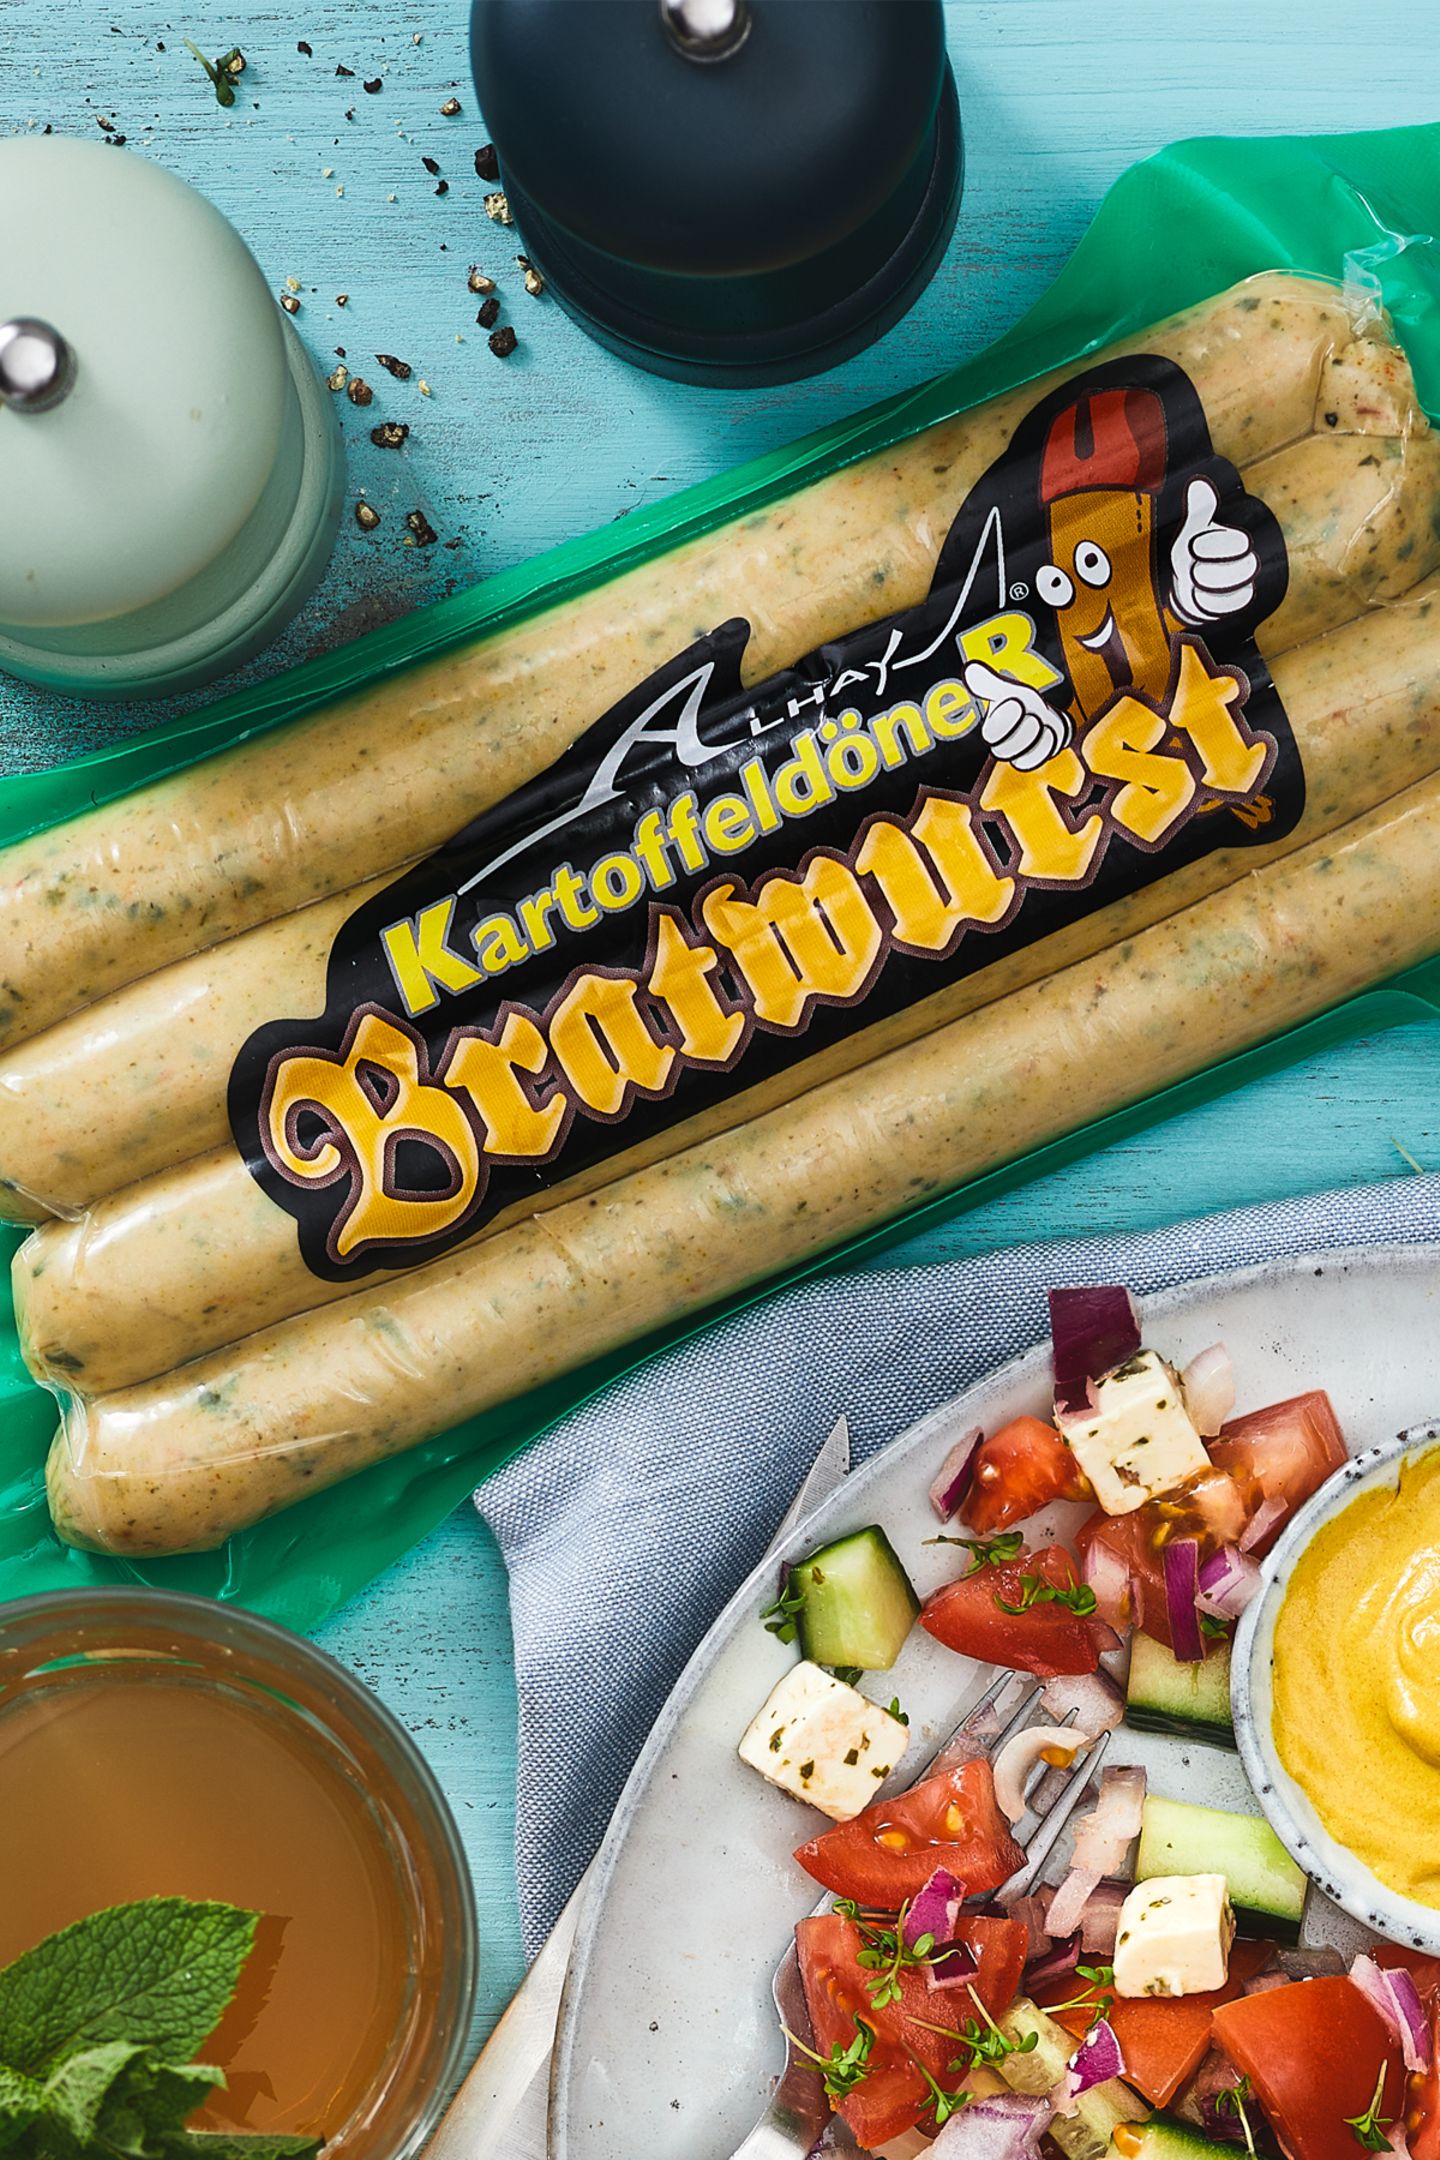 Ab ins Regal In der VOX-Show "Die leckerste Idee Deutschlands" wurde die Kartoffeldöner Bratwurst von Erfinder Hani Alhay von der Jury zum Sieger gekürt. Die Basis besteht aus 60 % Putenfleisch und ist gespickt mit Kartoffelstückchen, Parmak Sucuk (nach Art einer Knoblauchwurst) und Spinat. Erhältlich bei REWE, 400-Gramm-Packung etwa 4,49 Euro. 